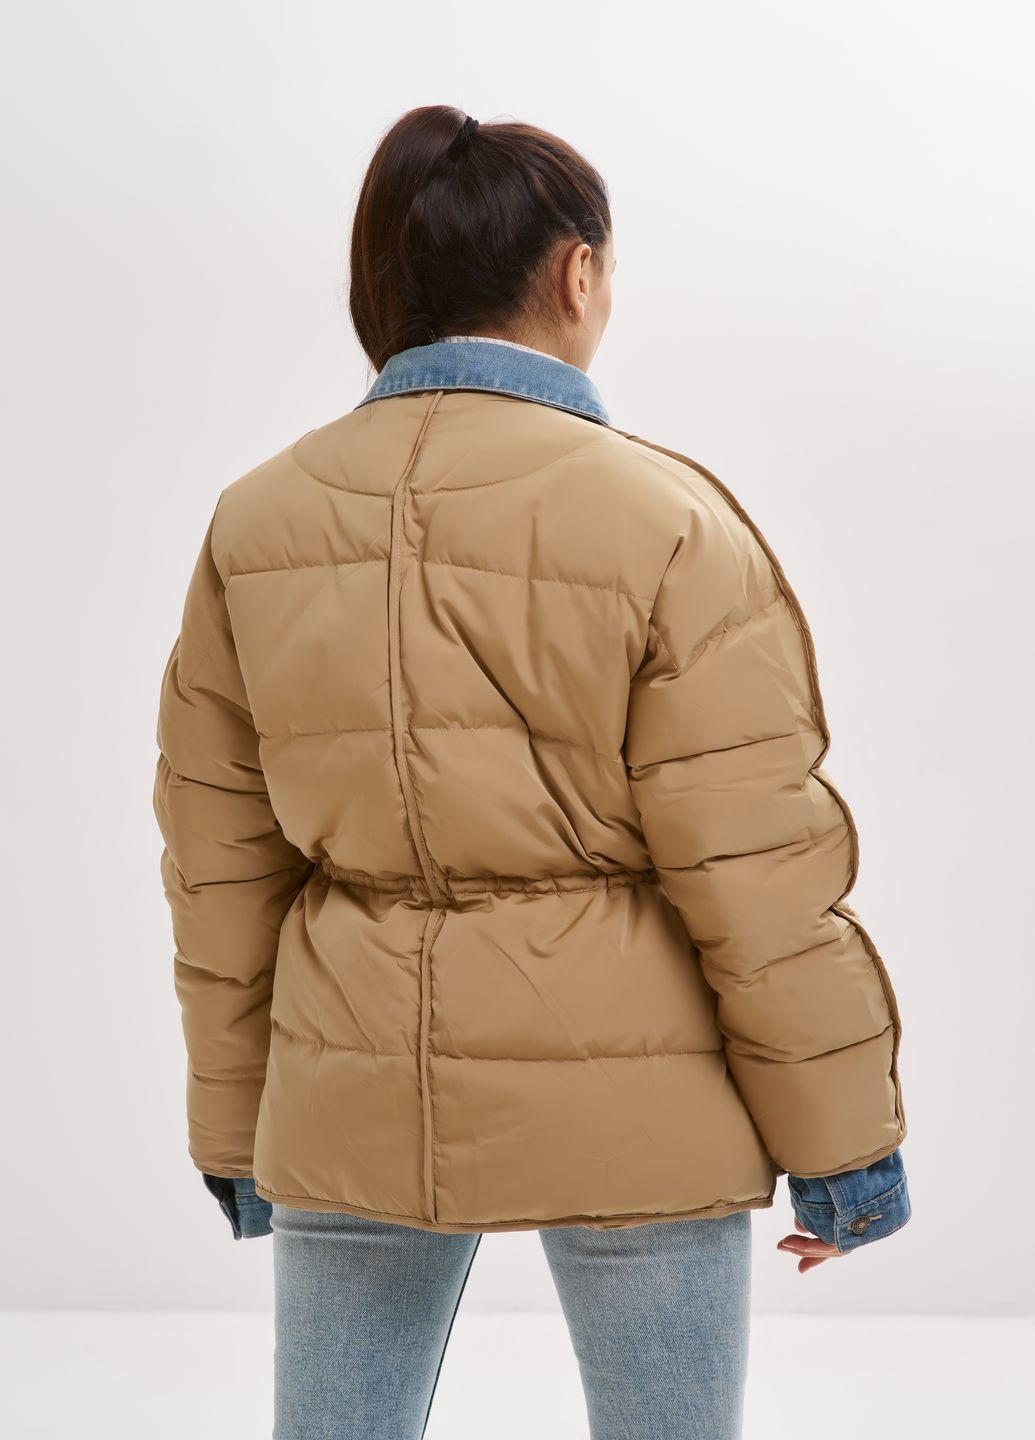 Бежева зимня жіночий короткий пуховик куртка з вшитими вставками джинсу натуральний пух водовідштовхуючий зима осінь m-09 беж Actors